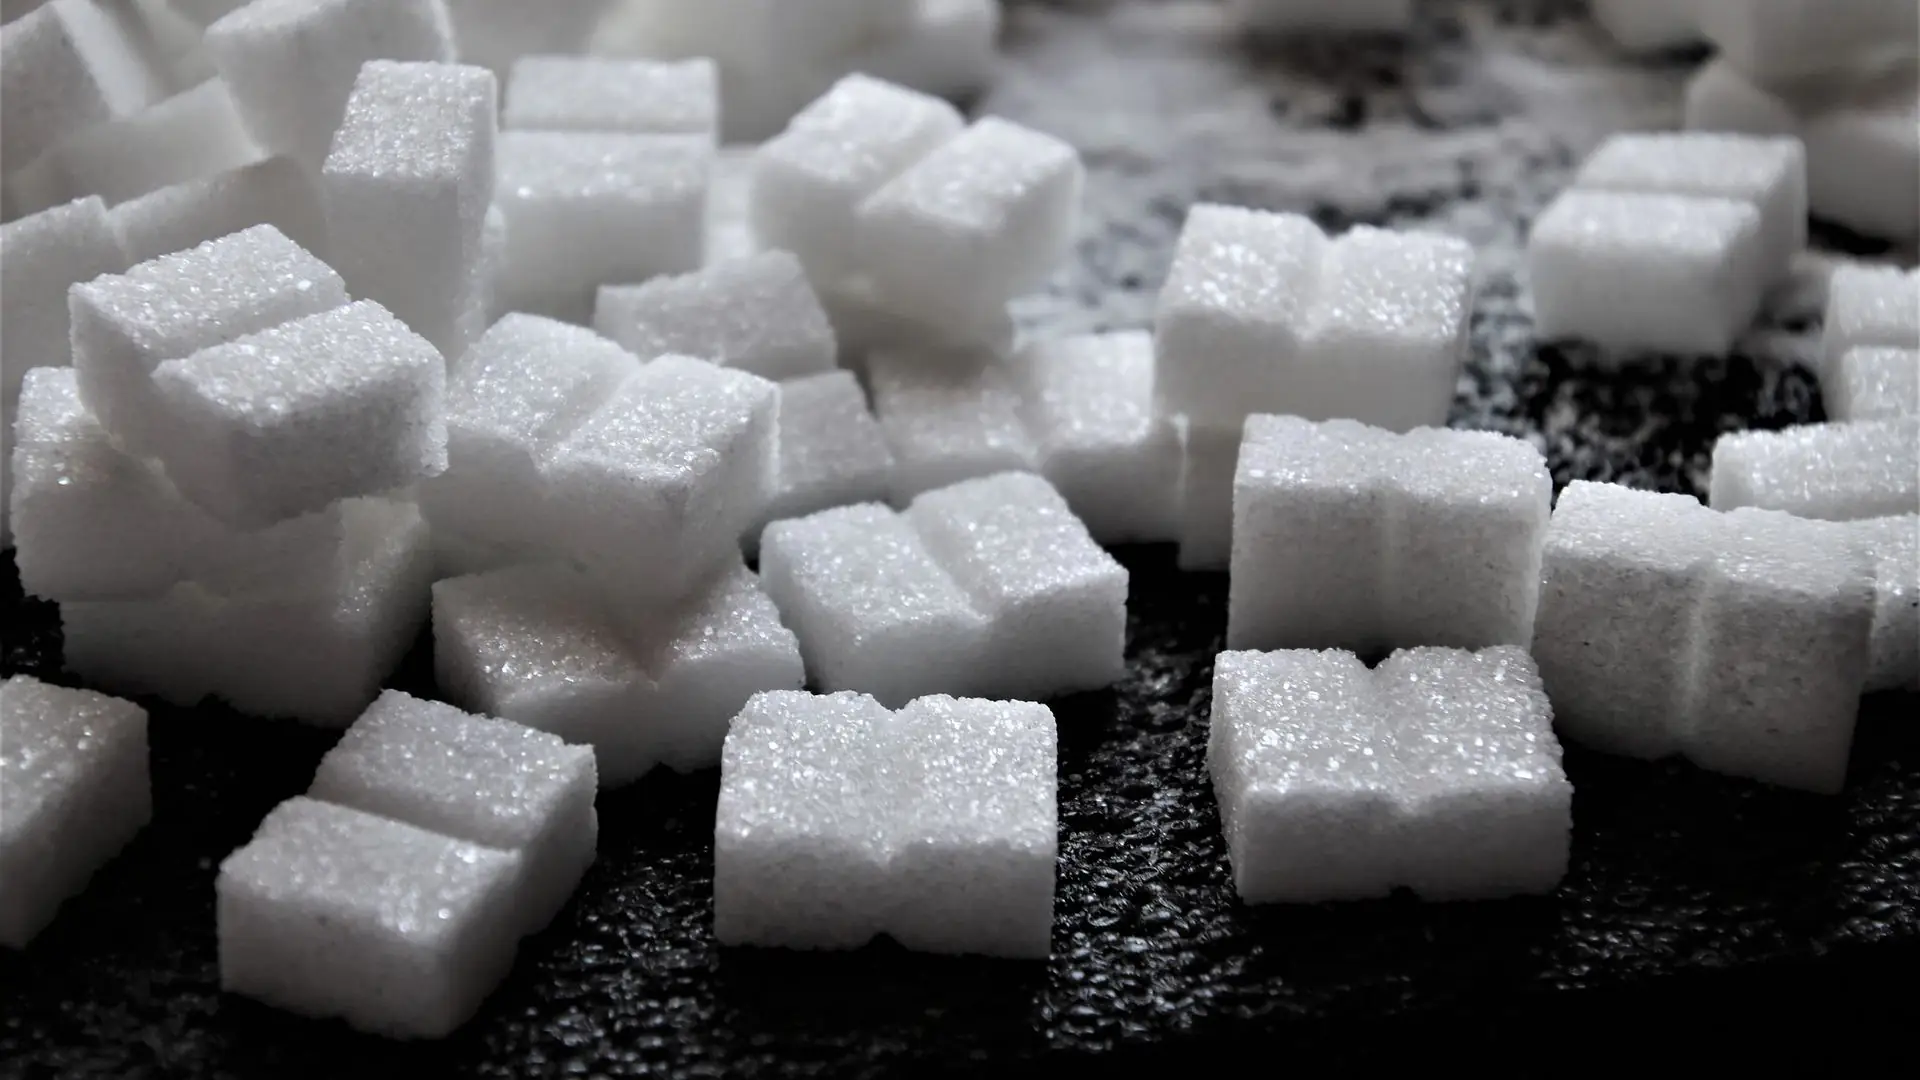 myFoodDoctor: Zu viel zugesetzter Zucker ist einer der größten Fehler in unserer Ernährung